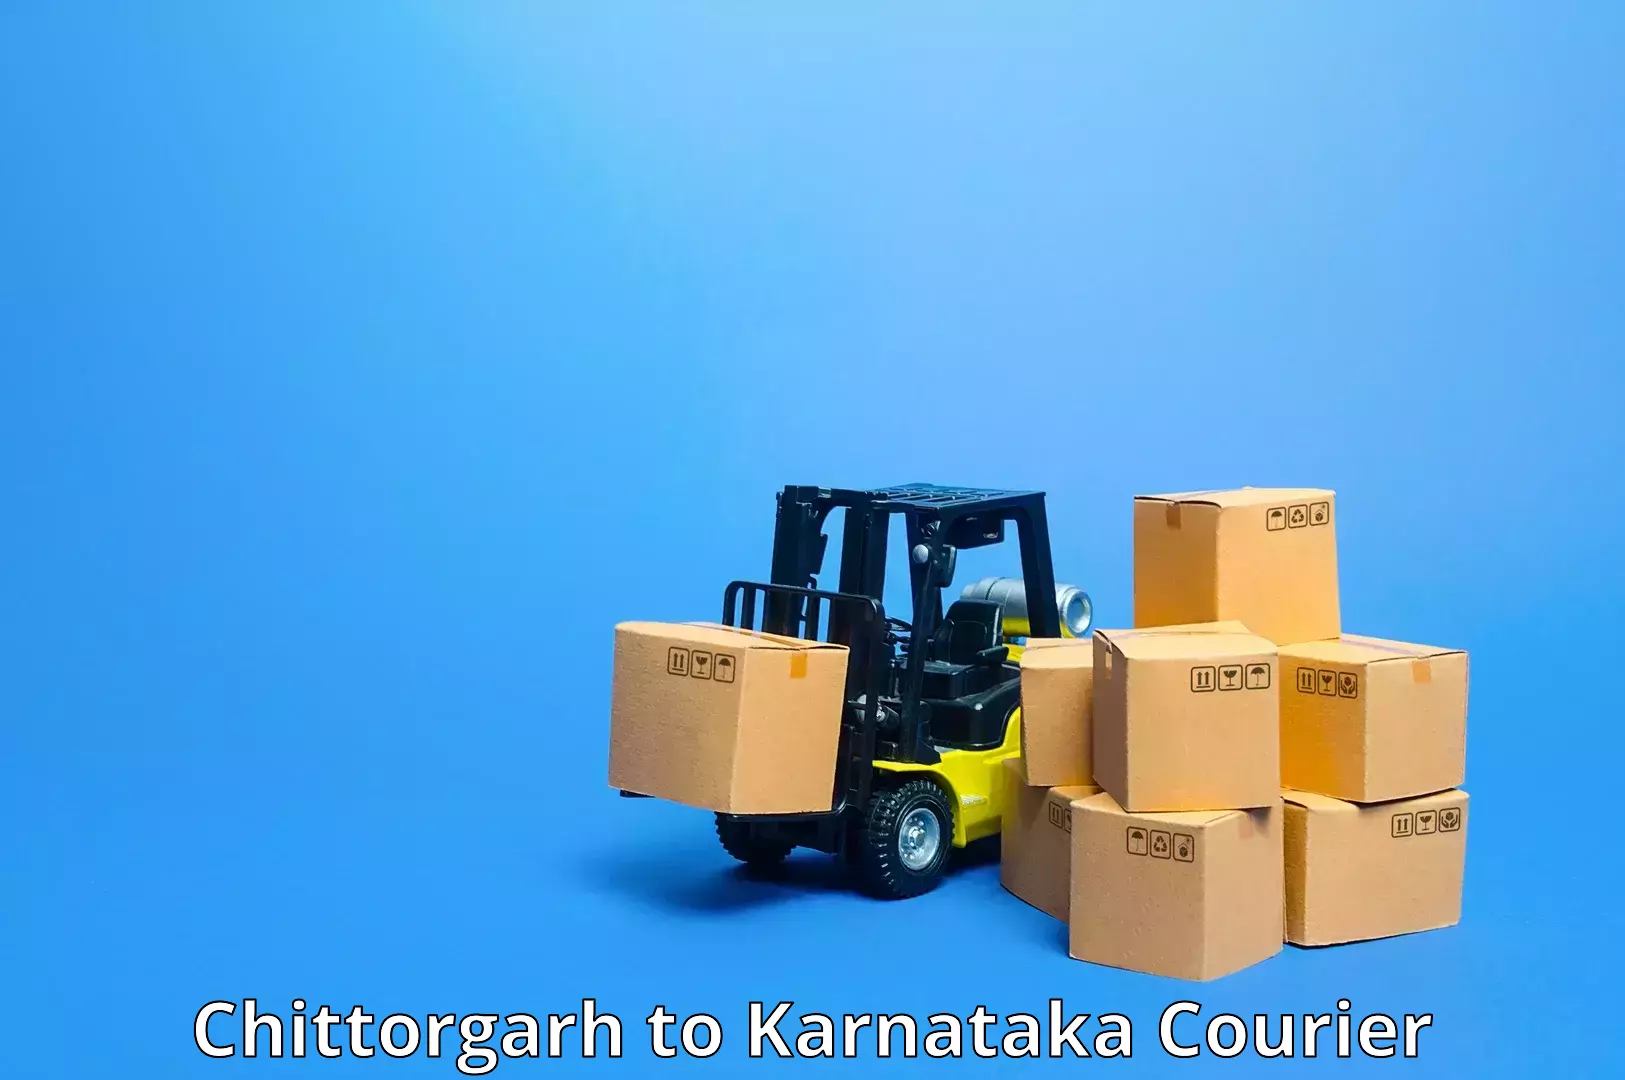 Premium delivery services Chittorgarh to Yadgir